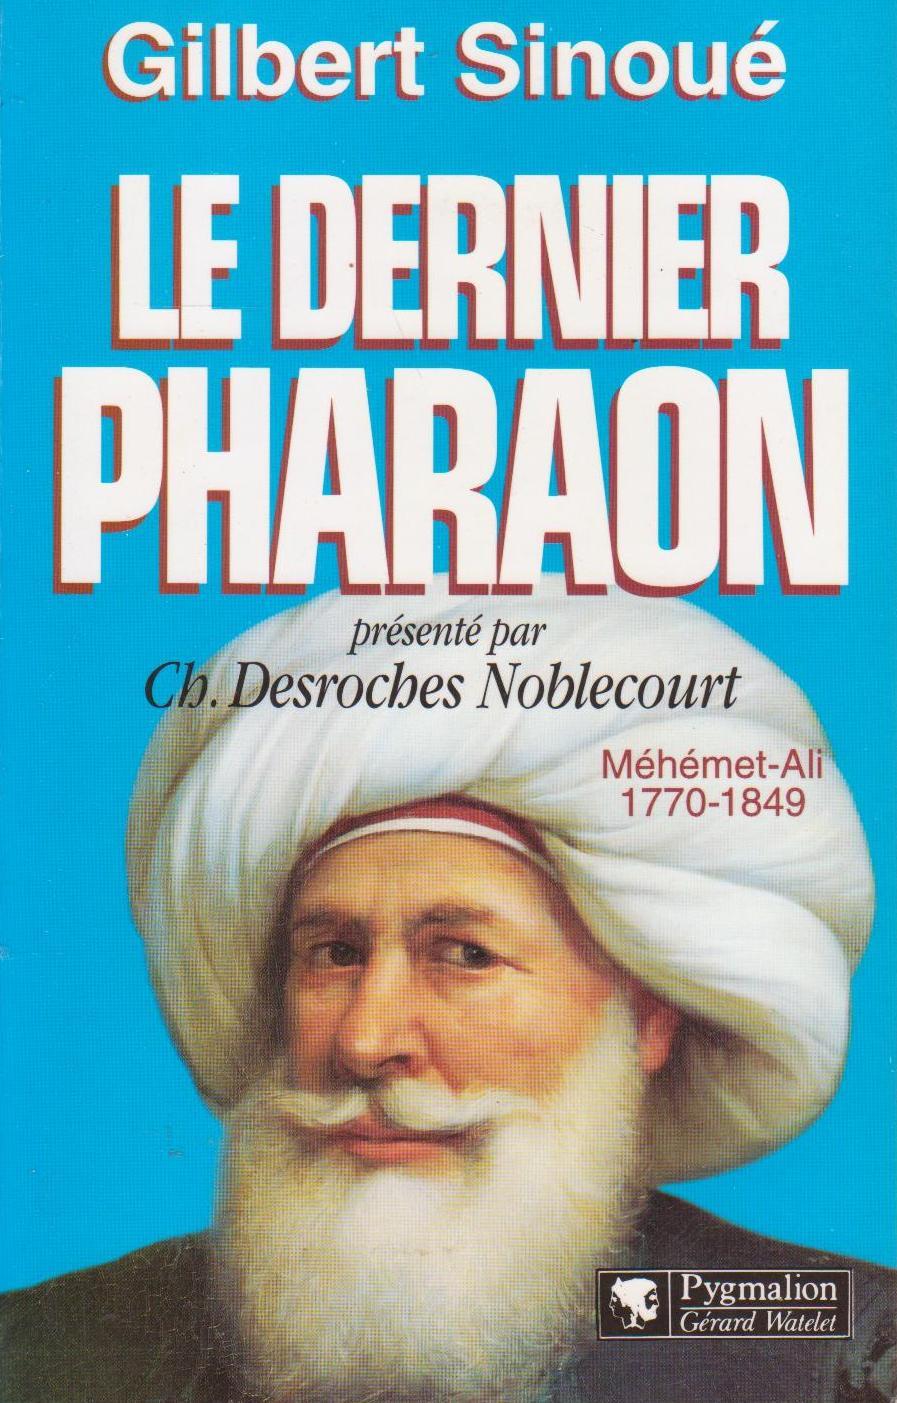 Dernier Pharaon (Le) : Méhémet-Ali, 1770-1849 - SINOUE, Gilbert (DESROCHES NOBLECOURT, Christiane, préfacier)